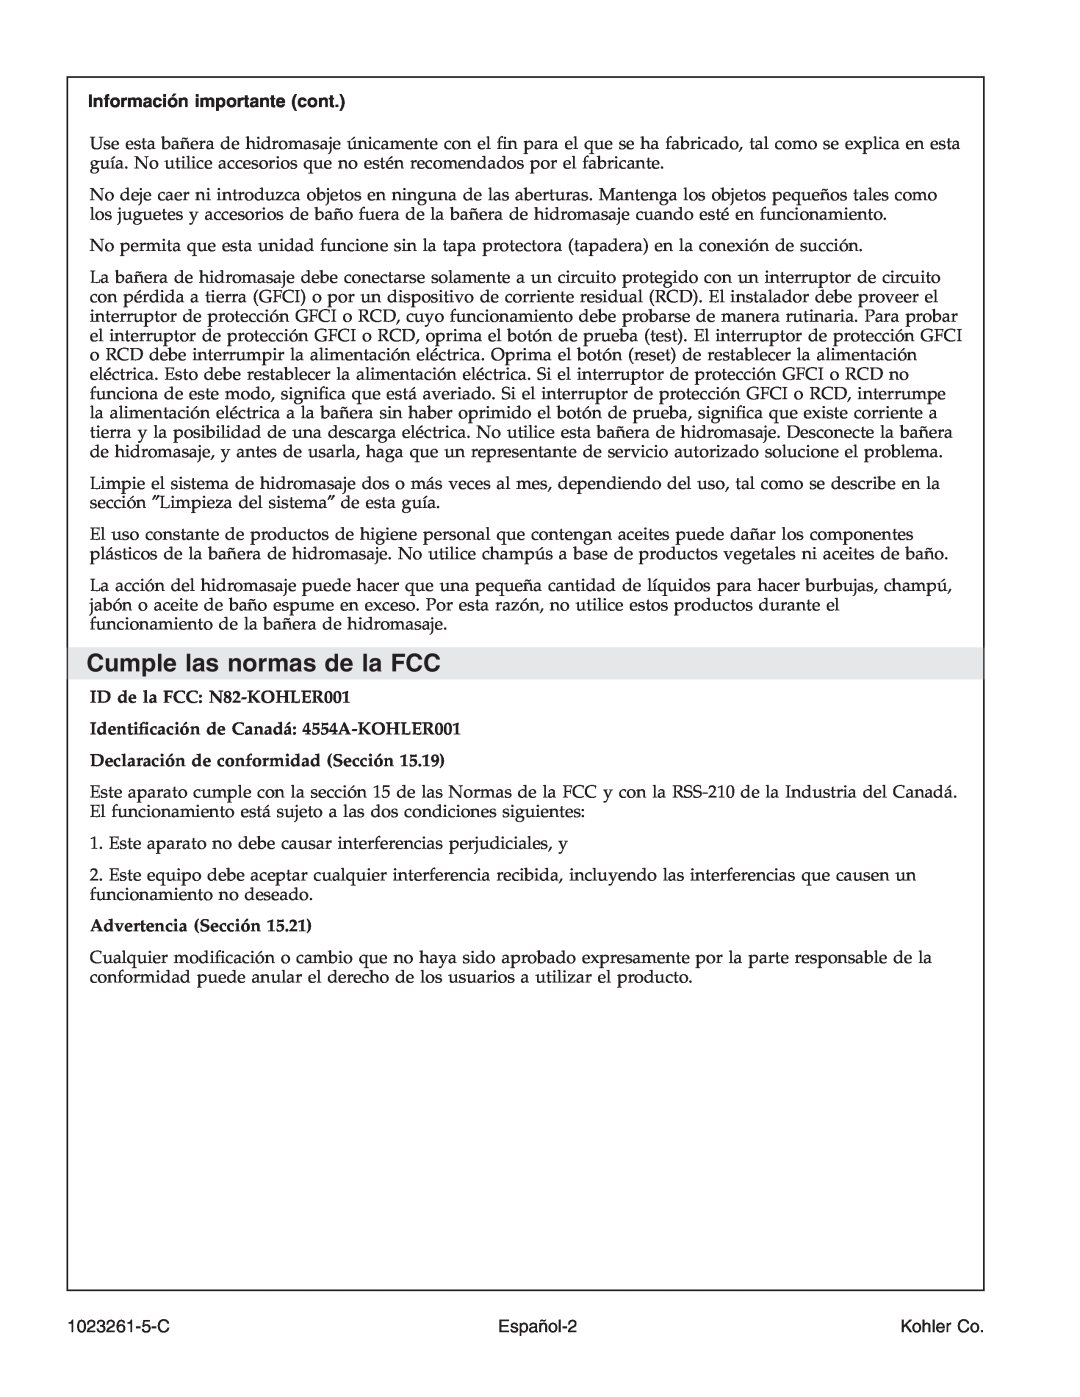 Kohler K-1110-CT manual Cumple las normas de la FCC, Información importante cont, Declaración de conformidad Sección 